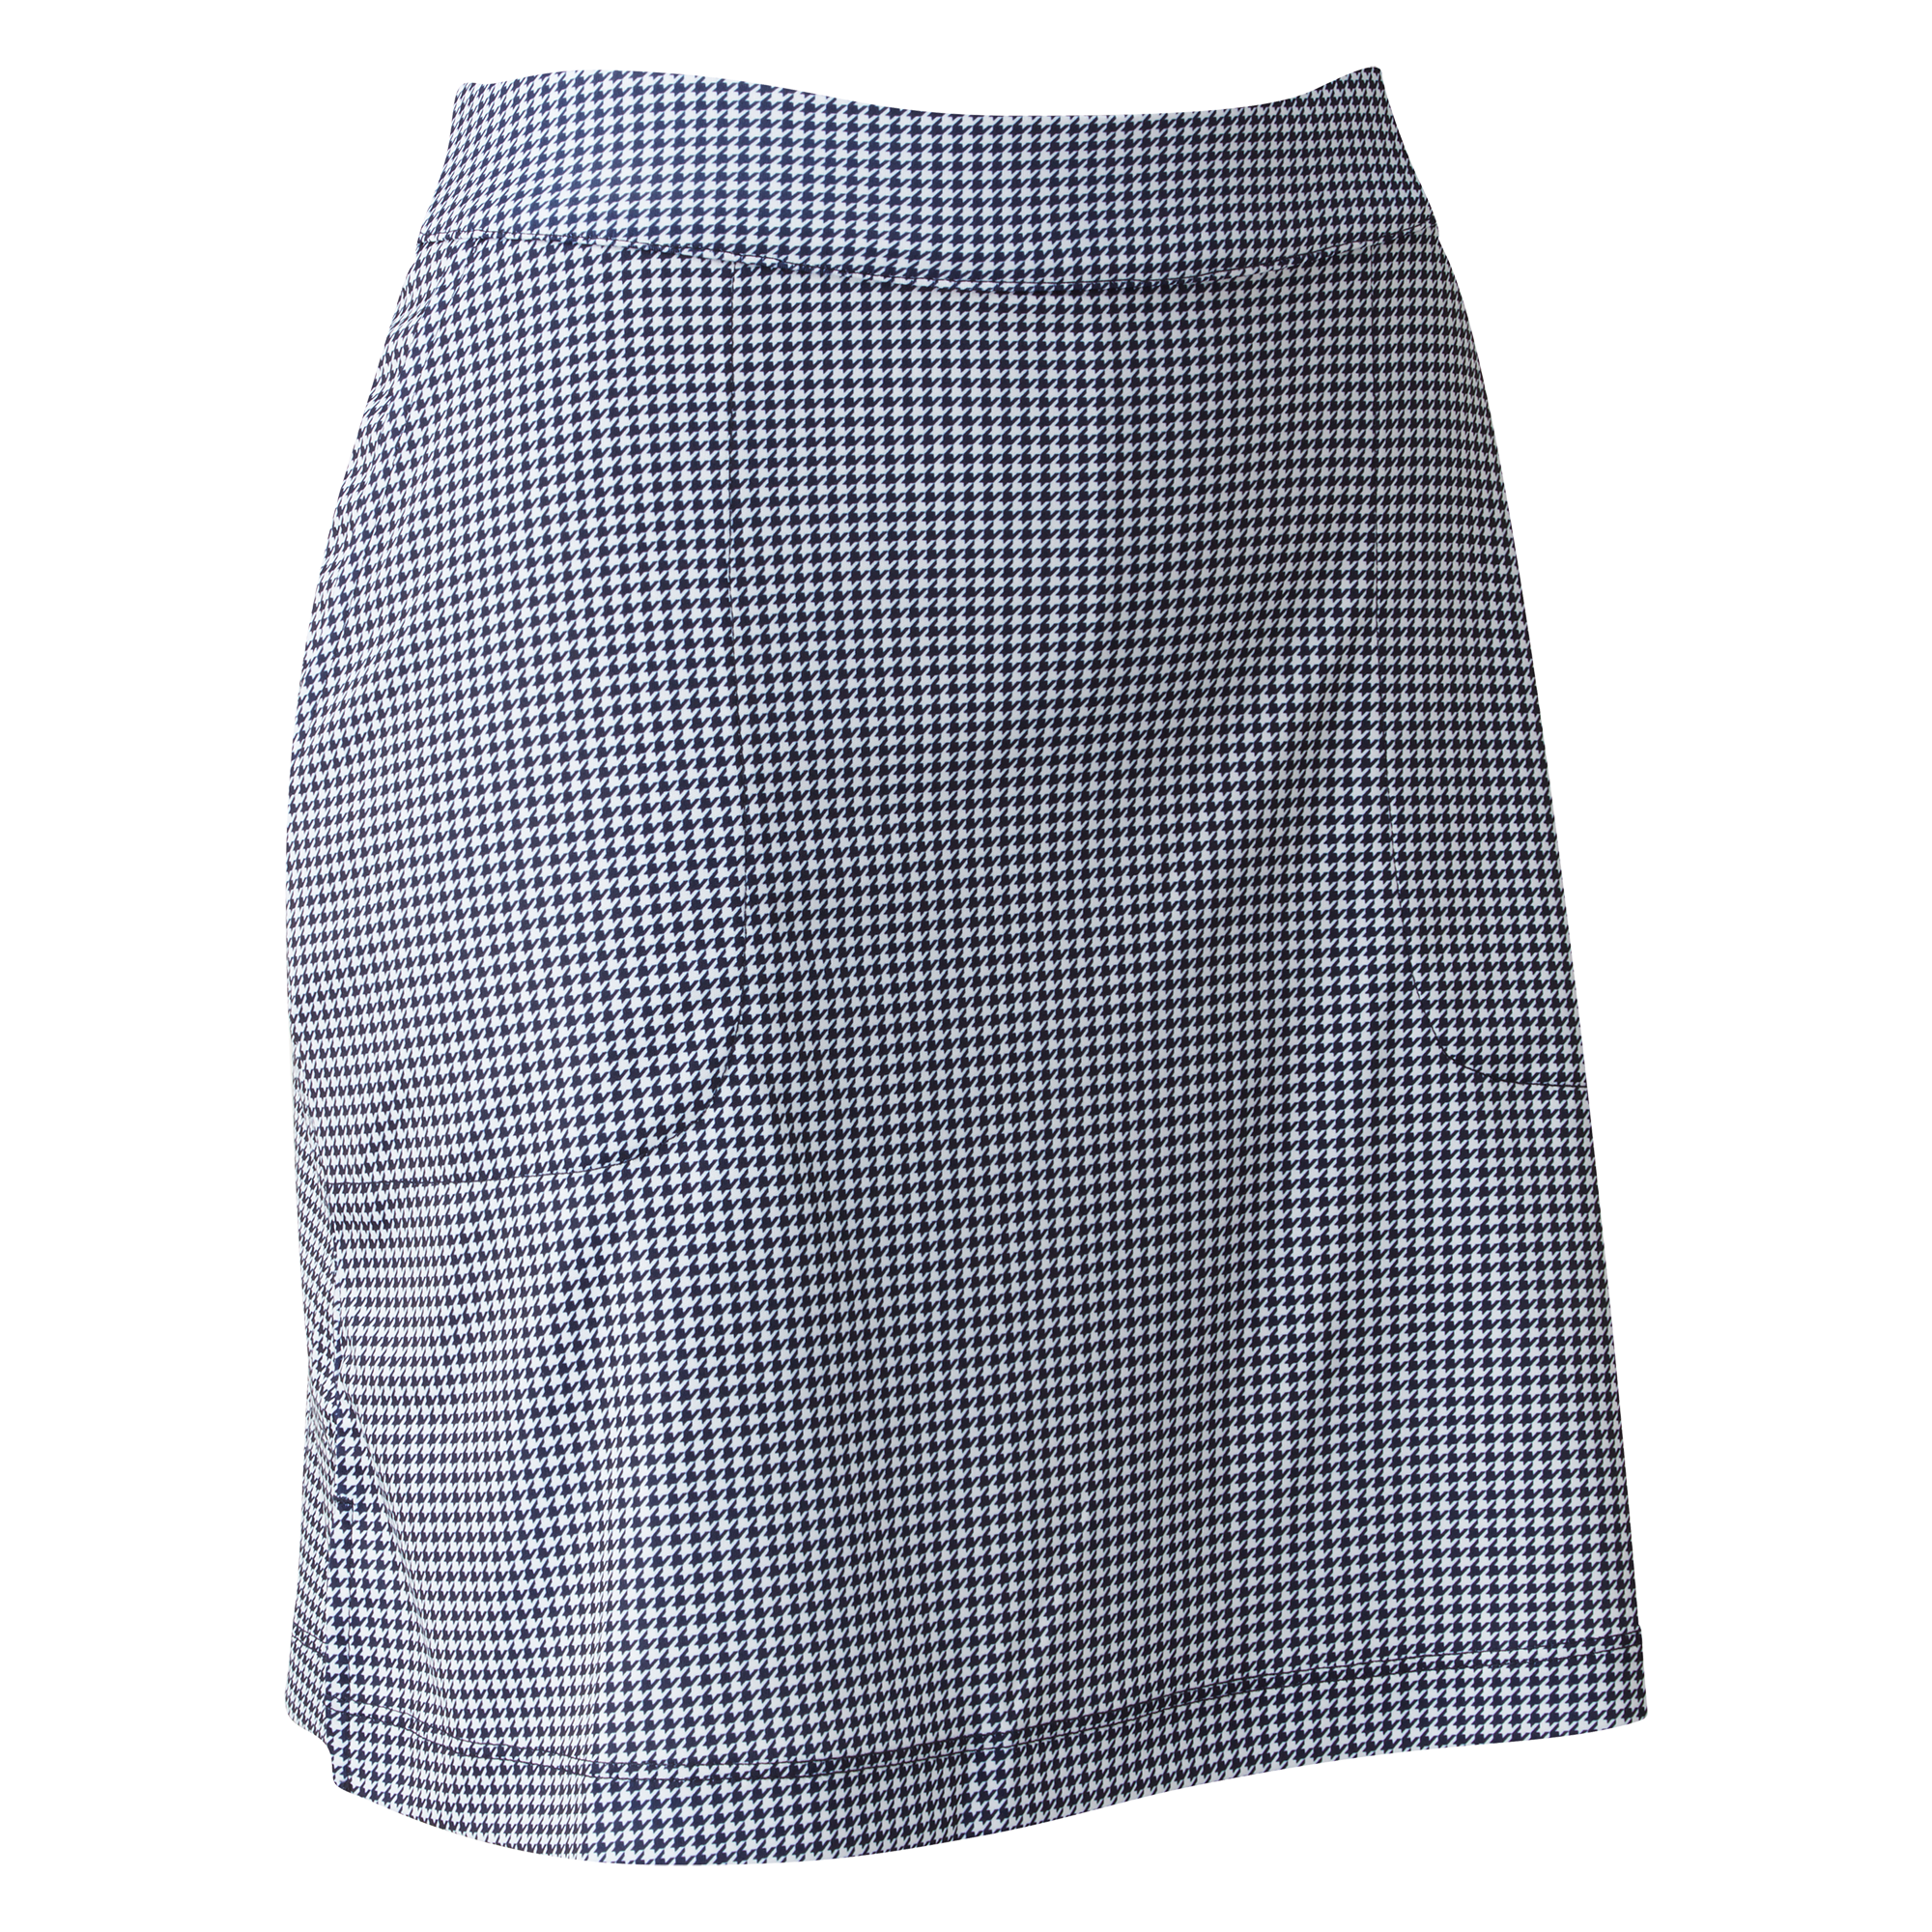 FootJoy Interlink Print dámská golfová sukně, bílá/tmavě modrá, vel. S